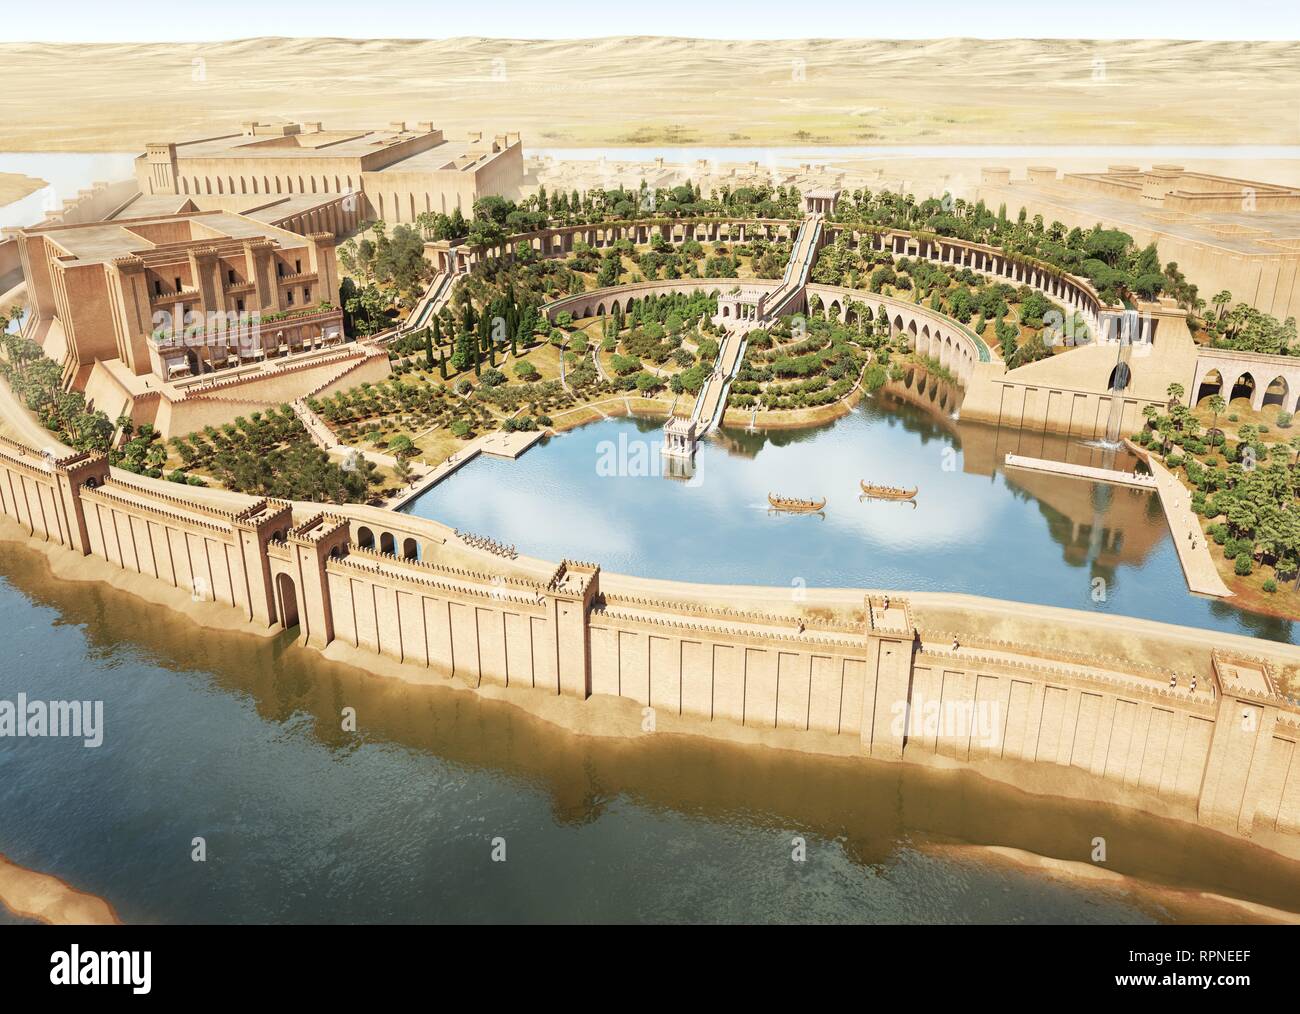 Nínive, capital del Reino de Asiria el siglo VIII A.C. Reconstrucción ideal los famosos "jardines colgantes" que casi siempre han sido atribuidos a la ciudad de Babilonia y que los